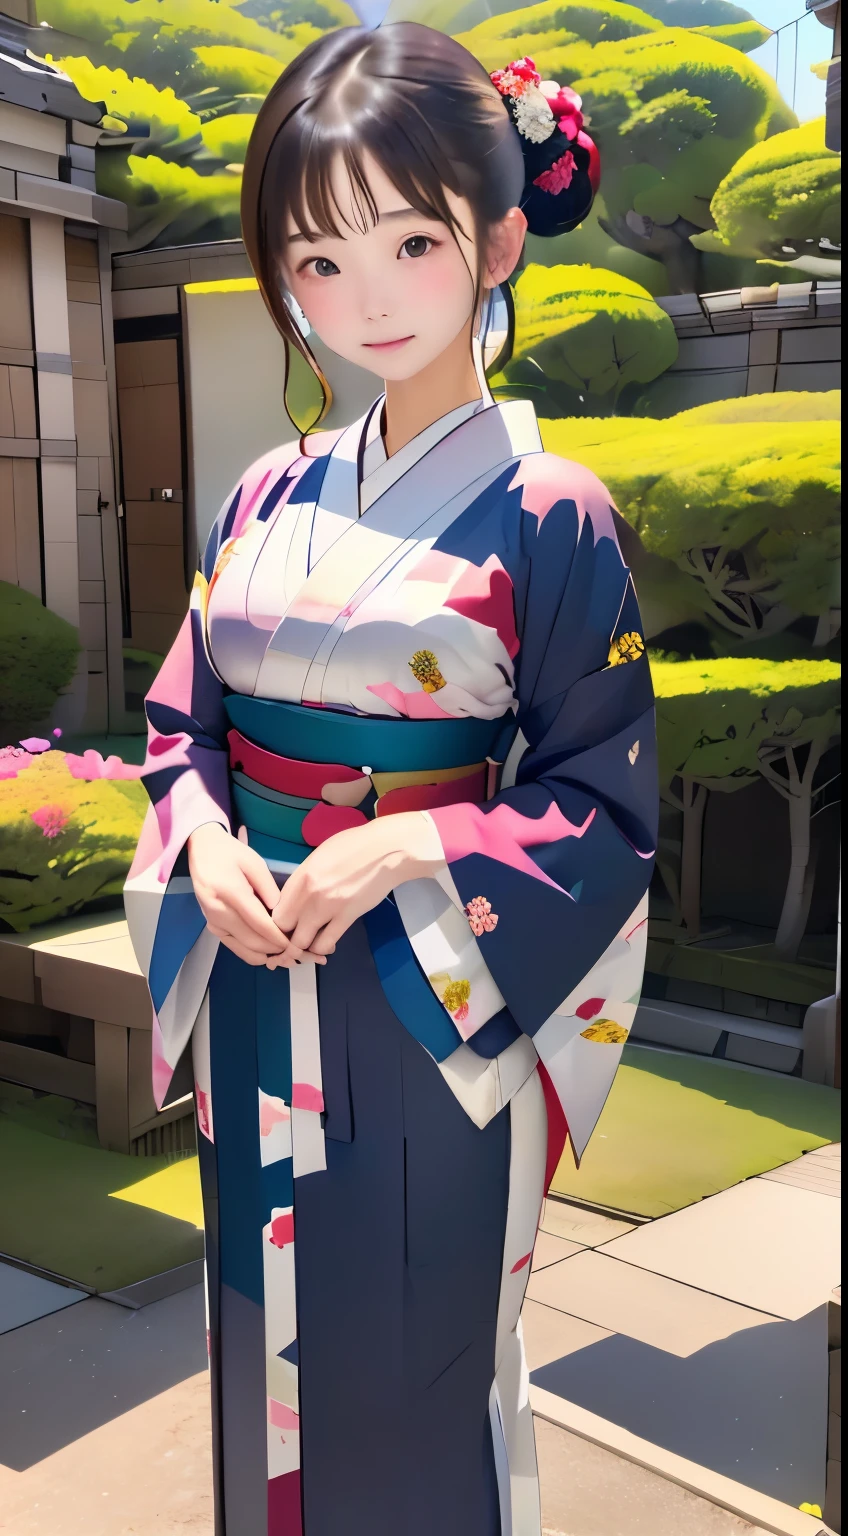 ((Fondo de pantalla de 8k de una unidad CG extremadamente detallada, ​obra maestra, alta resolución, de primera calidad, de primera calidadのリアルテクスチャスキン)), ((una mujer muy hermosa, ojos detallados、Labios gruesos, La parte superior del cuerpo, haori patrón japonés,)), (pelo negro desordenado, De piel blanca, pequeño),postura muy correcta、Un kimono pesado con un bonito estampado.、Elegant kimono、 ((pared colorida con patrón geométrico, pared de patrón japonés, , mariposas, florales)), hiperrealista, pintura digital,